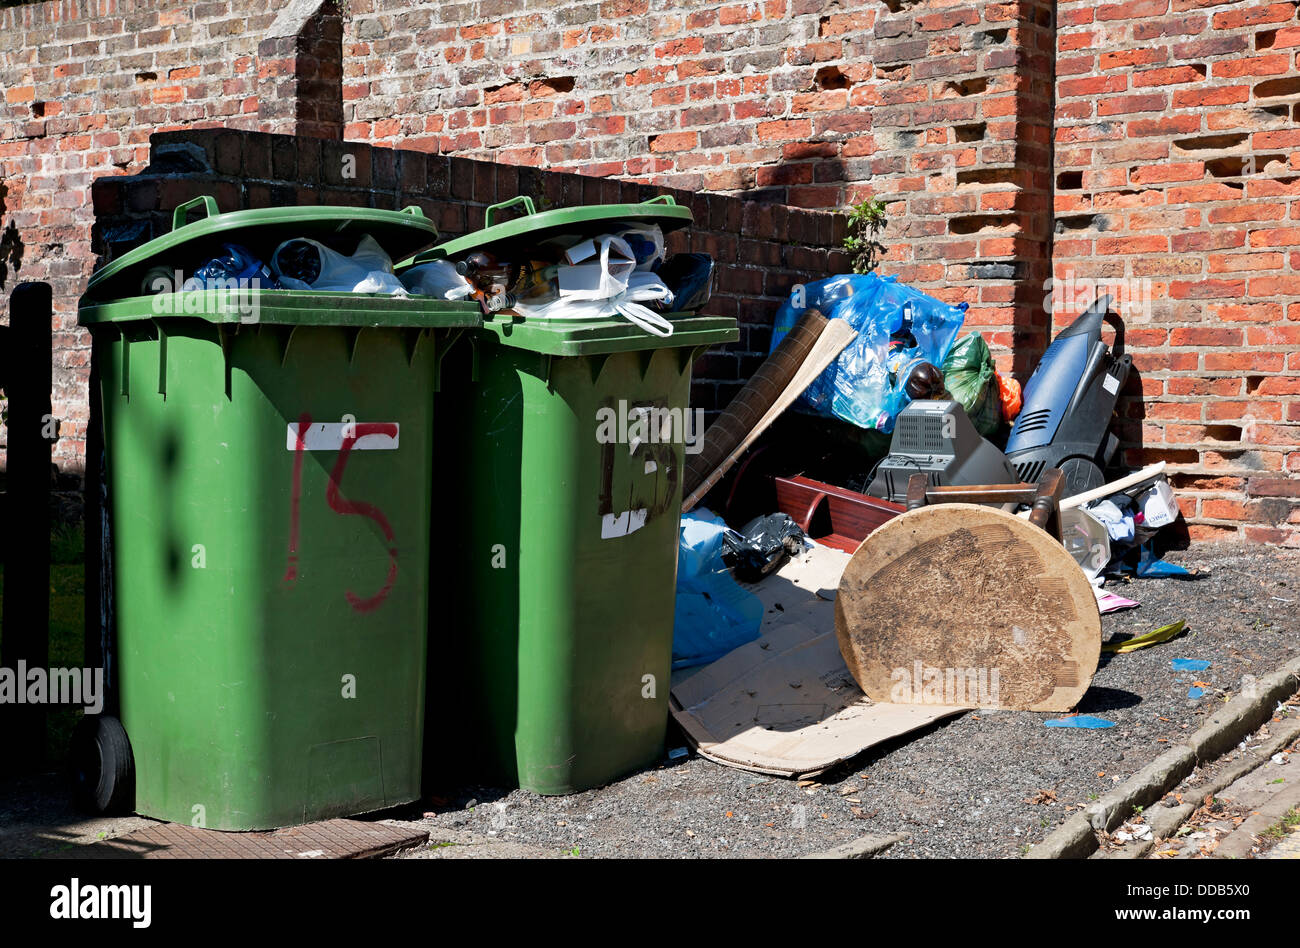 Plein débordement ménager vert déchets poubelles à roulettes poubelle et mouche basculant Tipped ordbish mess Angleterre Royaume-Uni GB Grande-Bretagne Banque D'Images